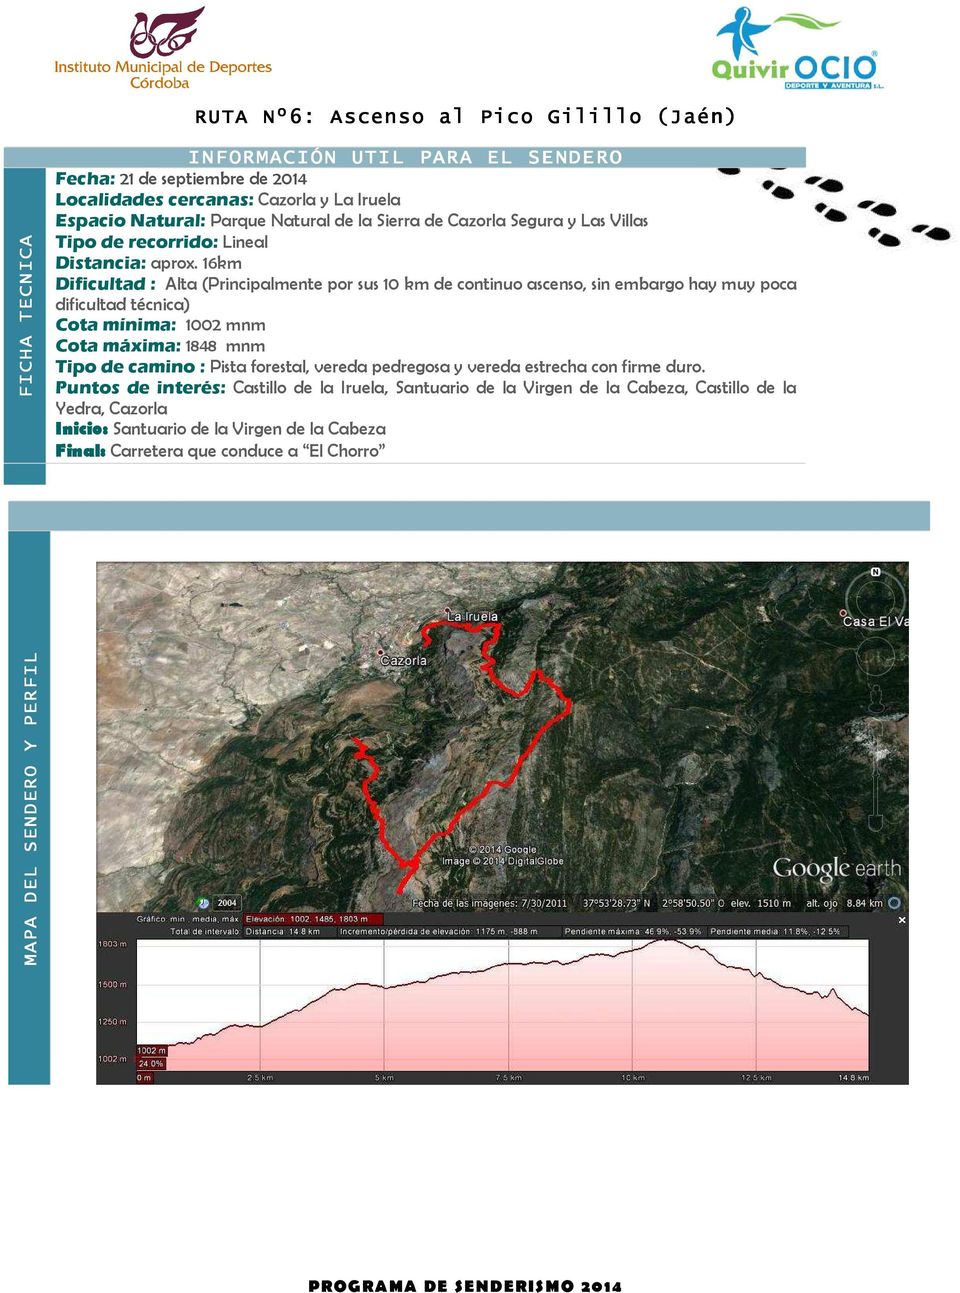 16km Dificultad : Alta (Principalmente por sus 10 km continuo ascenso, sin embargo hay muy poca dificultad técnica) Cota mínima: 1002 mnm Cota máxima: 1848 mnm Tipo camino : Pista